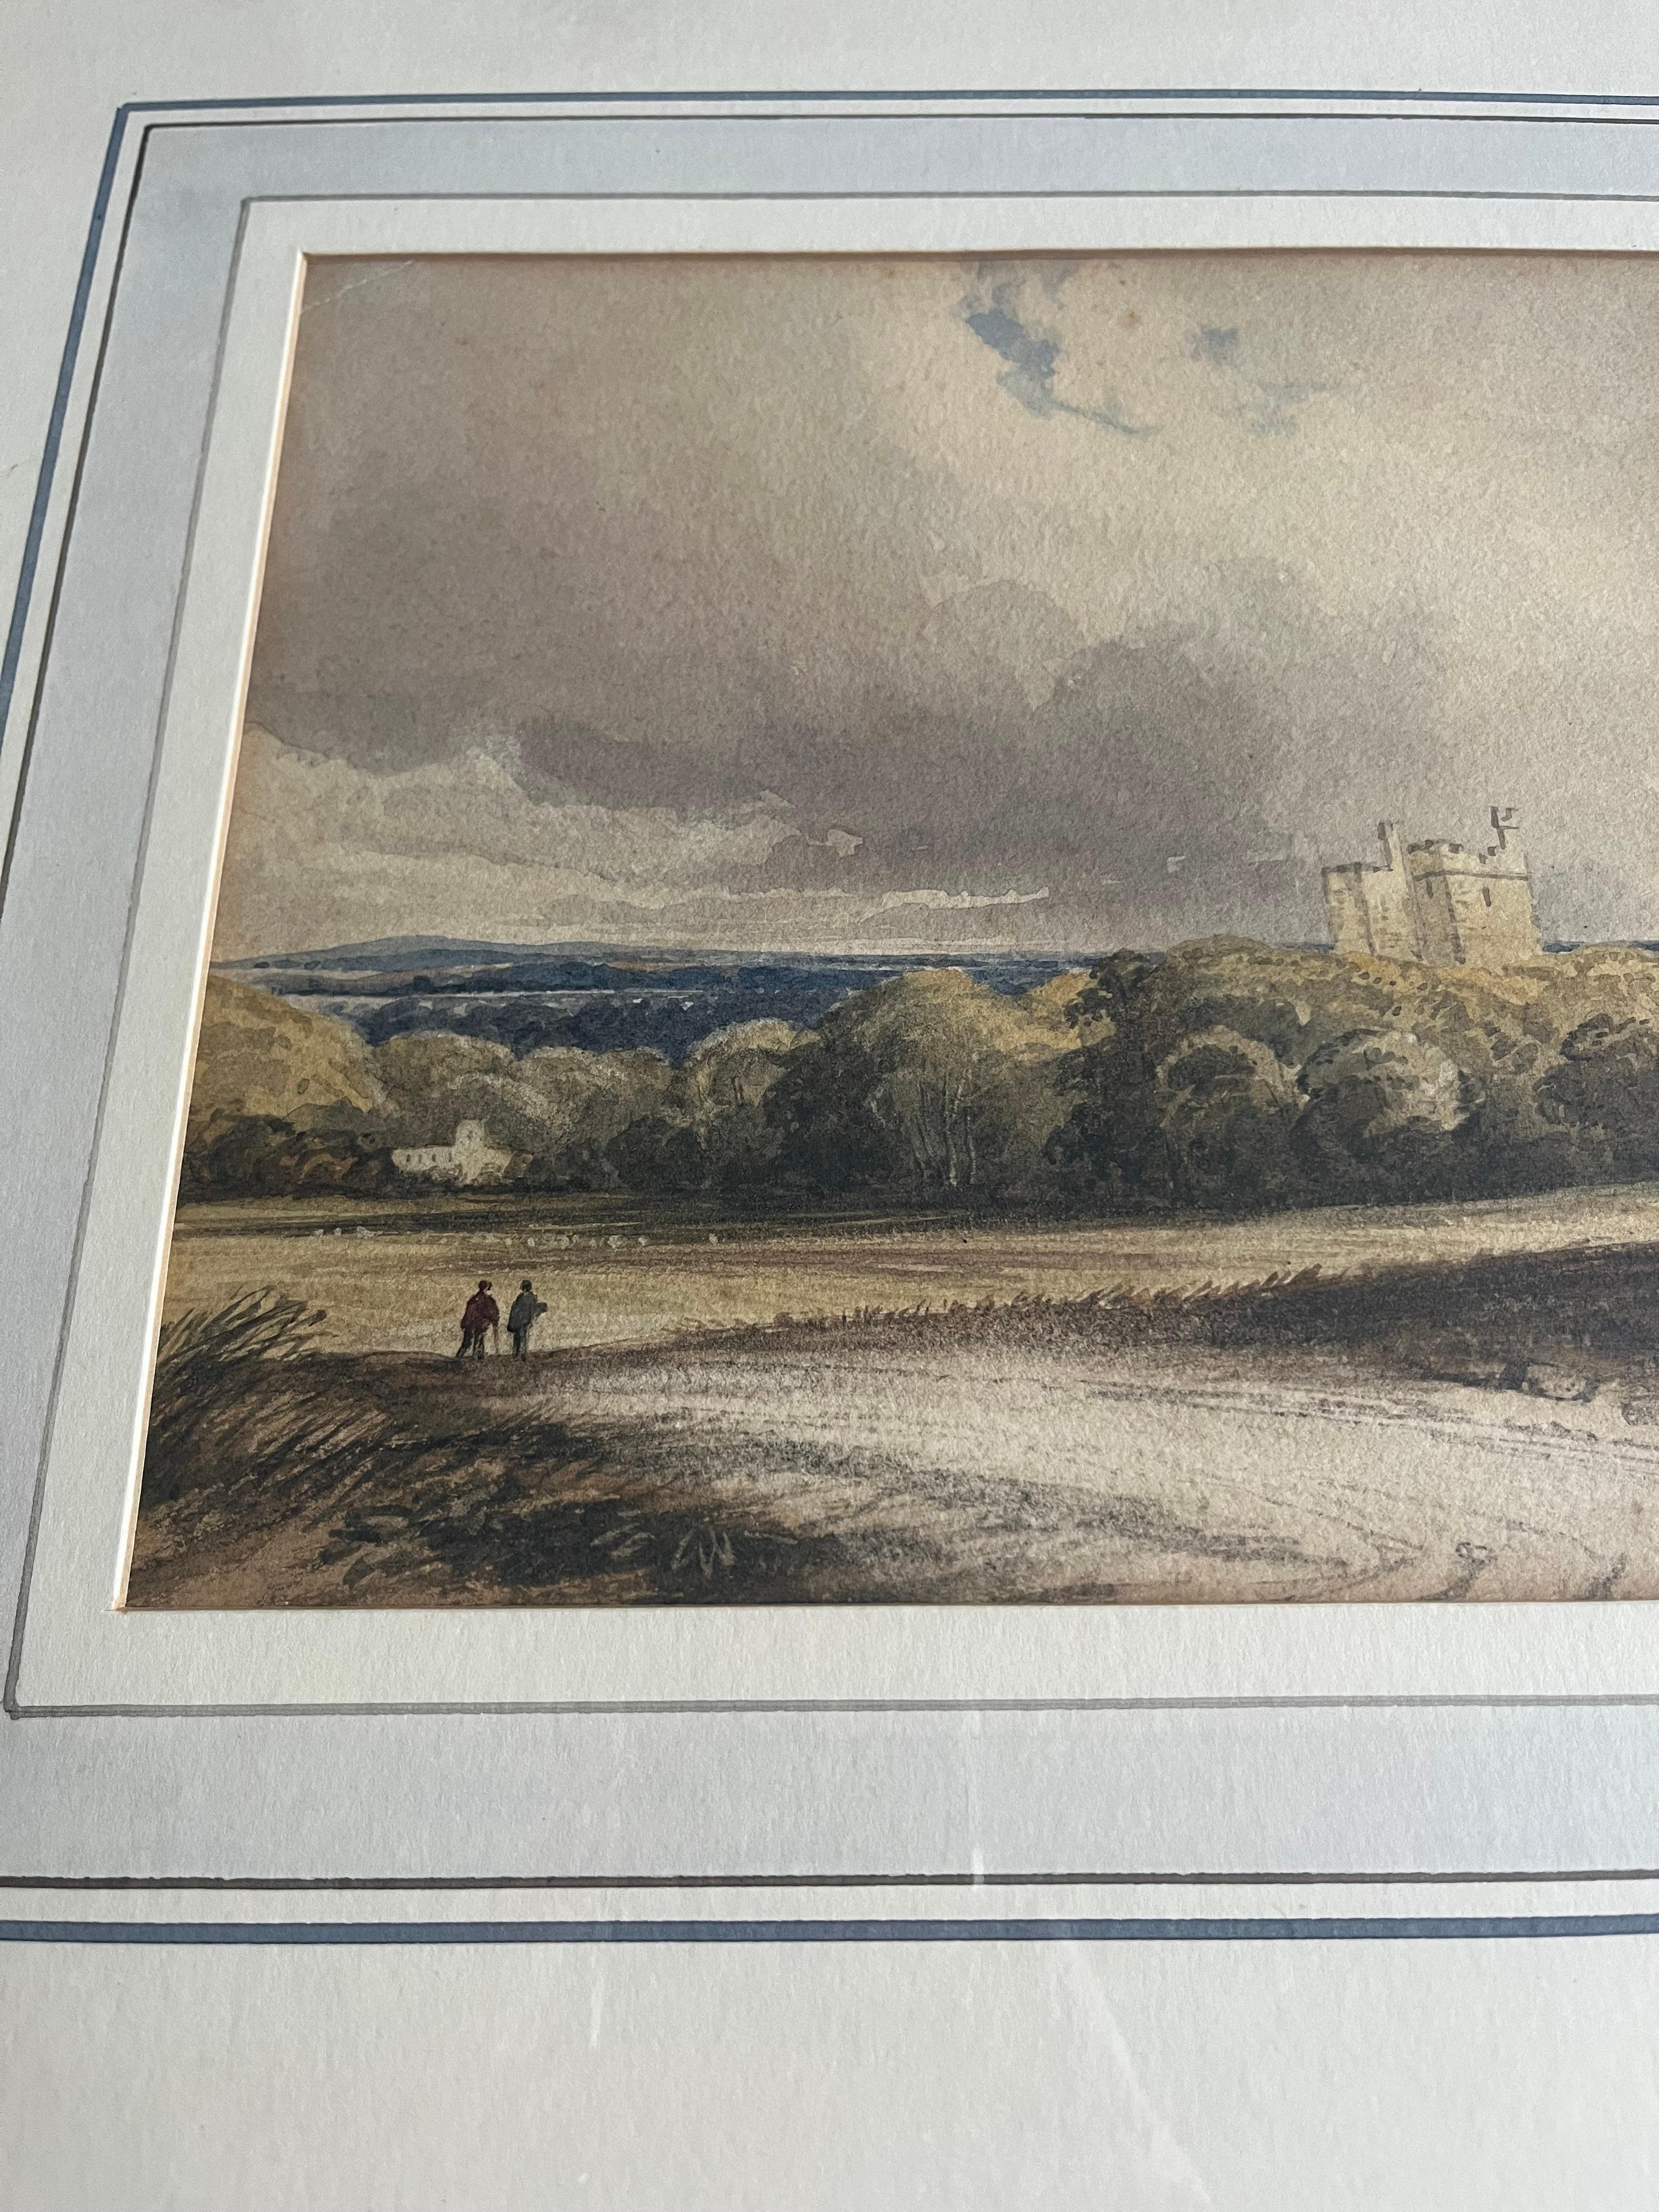 Une belle scène rurale avec des personnages marchant sur un chemin de campagne, s'arrêtant un instant pour discuter et regarder vers le château dans les bois.

Cercle de William Leighton Leitch (1804-1883)
Figures sur une piste avec un château